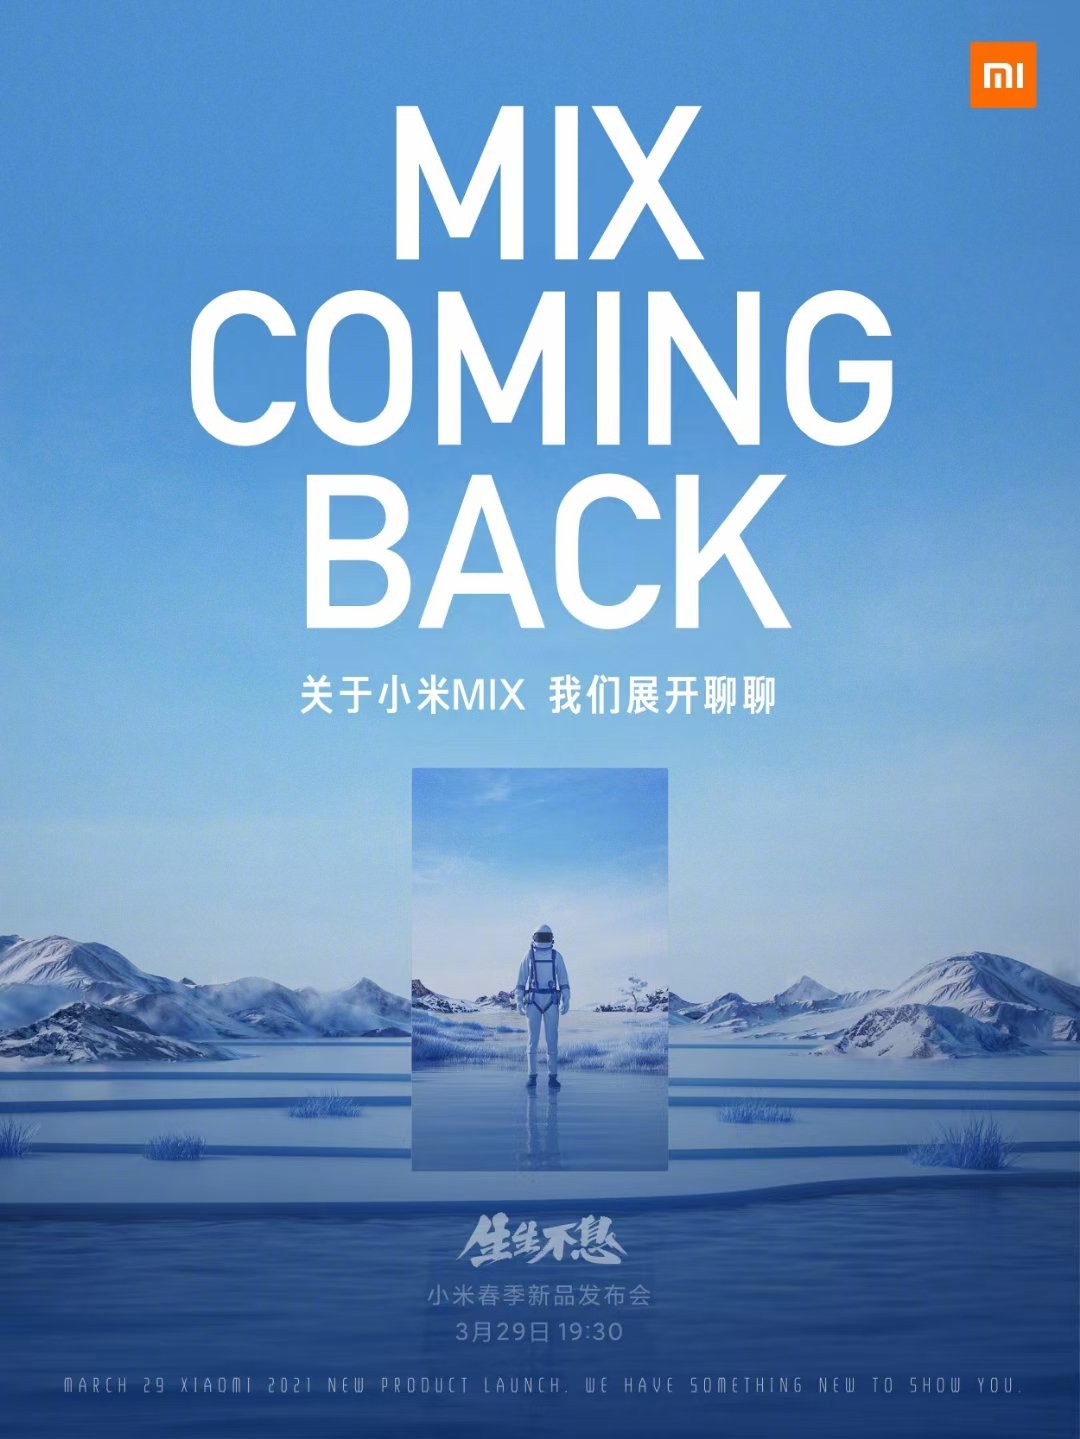 Xiaomi Mi MIX 29. marts lanceringsbegivenhed